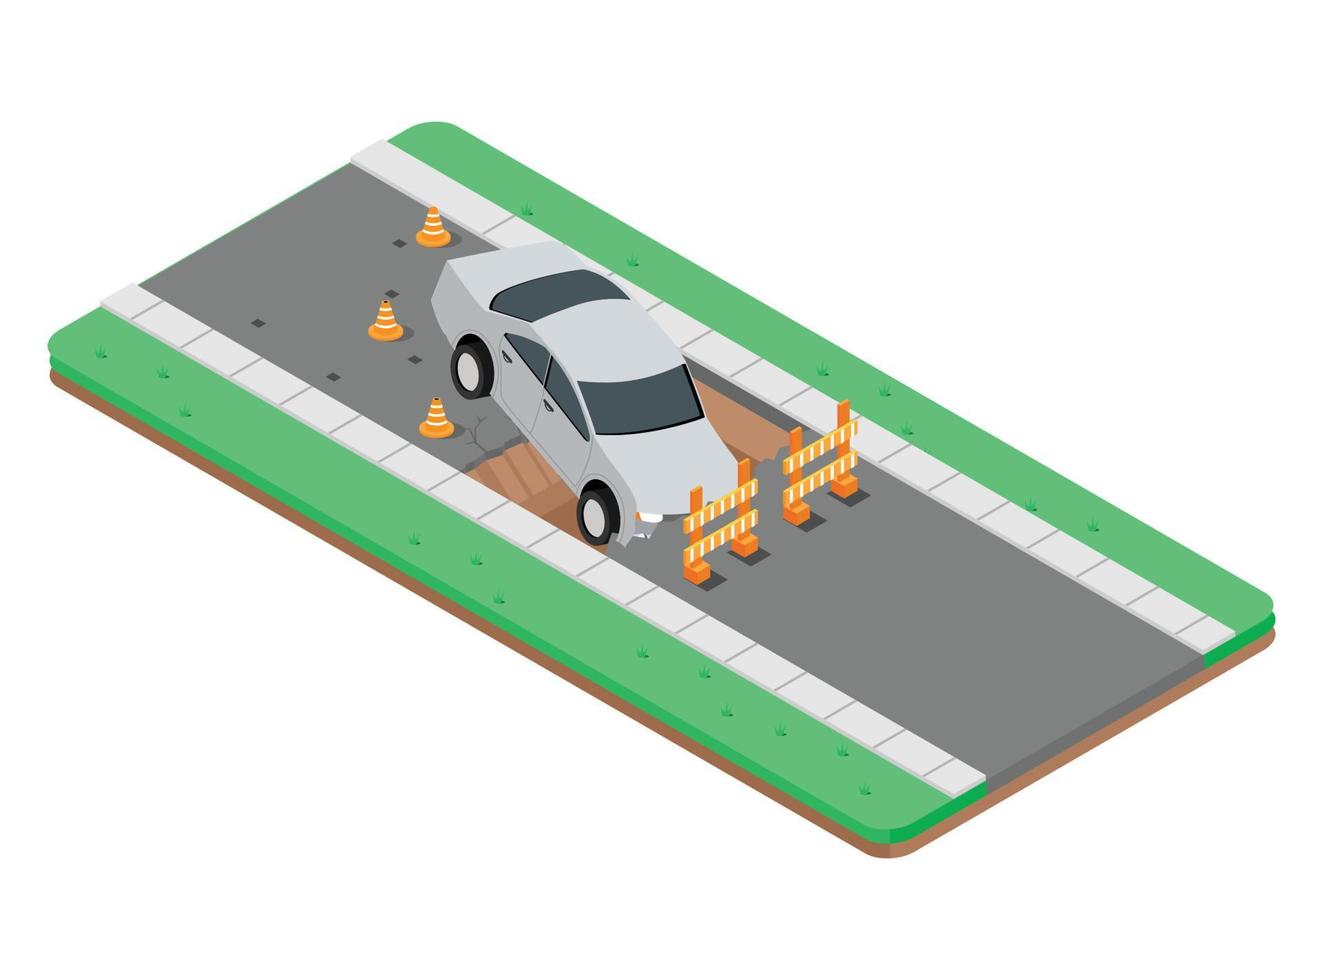 Ilustración isométrica 3D de un accidente de tráfico, un coche en una carretera rota. ilustración isométrica vectorial adecuada para diagramas, infografías y otros activos gráficos vector